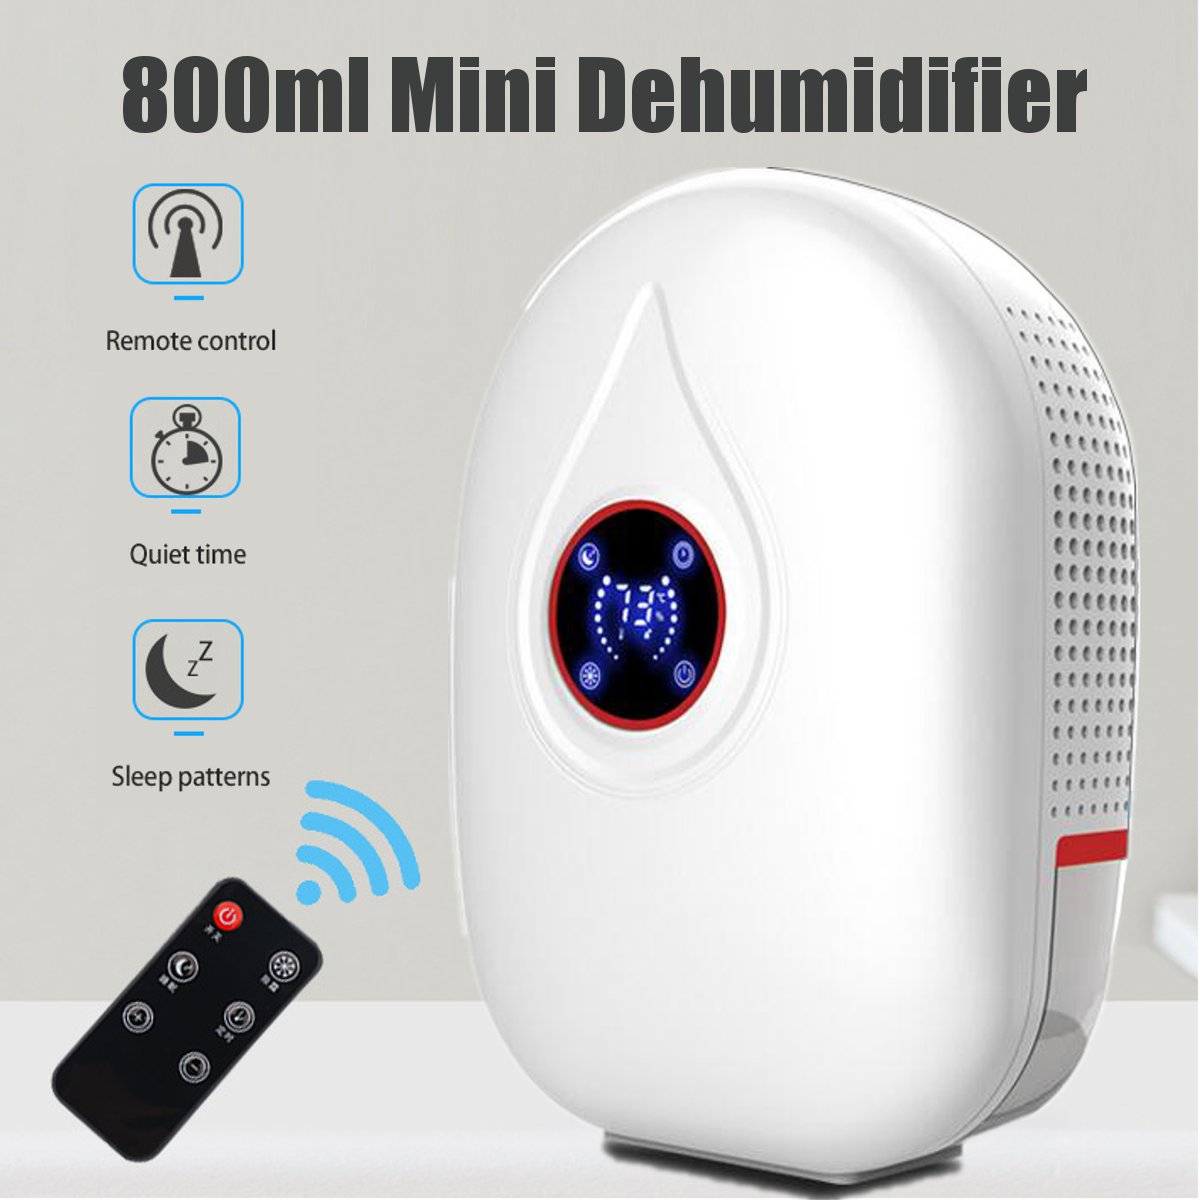 22W-Portable-Mini--Air-Dehumidifier-Bedroom-Basement-Home-Air-Dryer-Machine-800ml-1580102-1